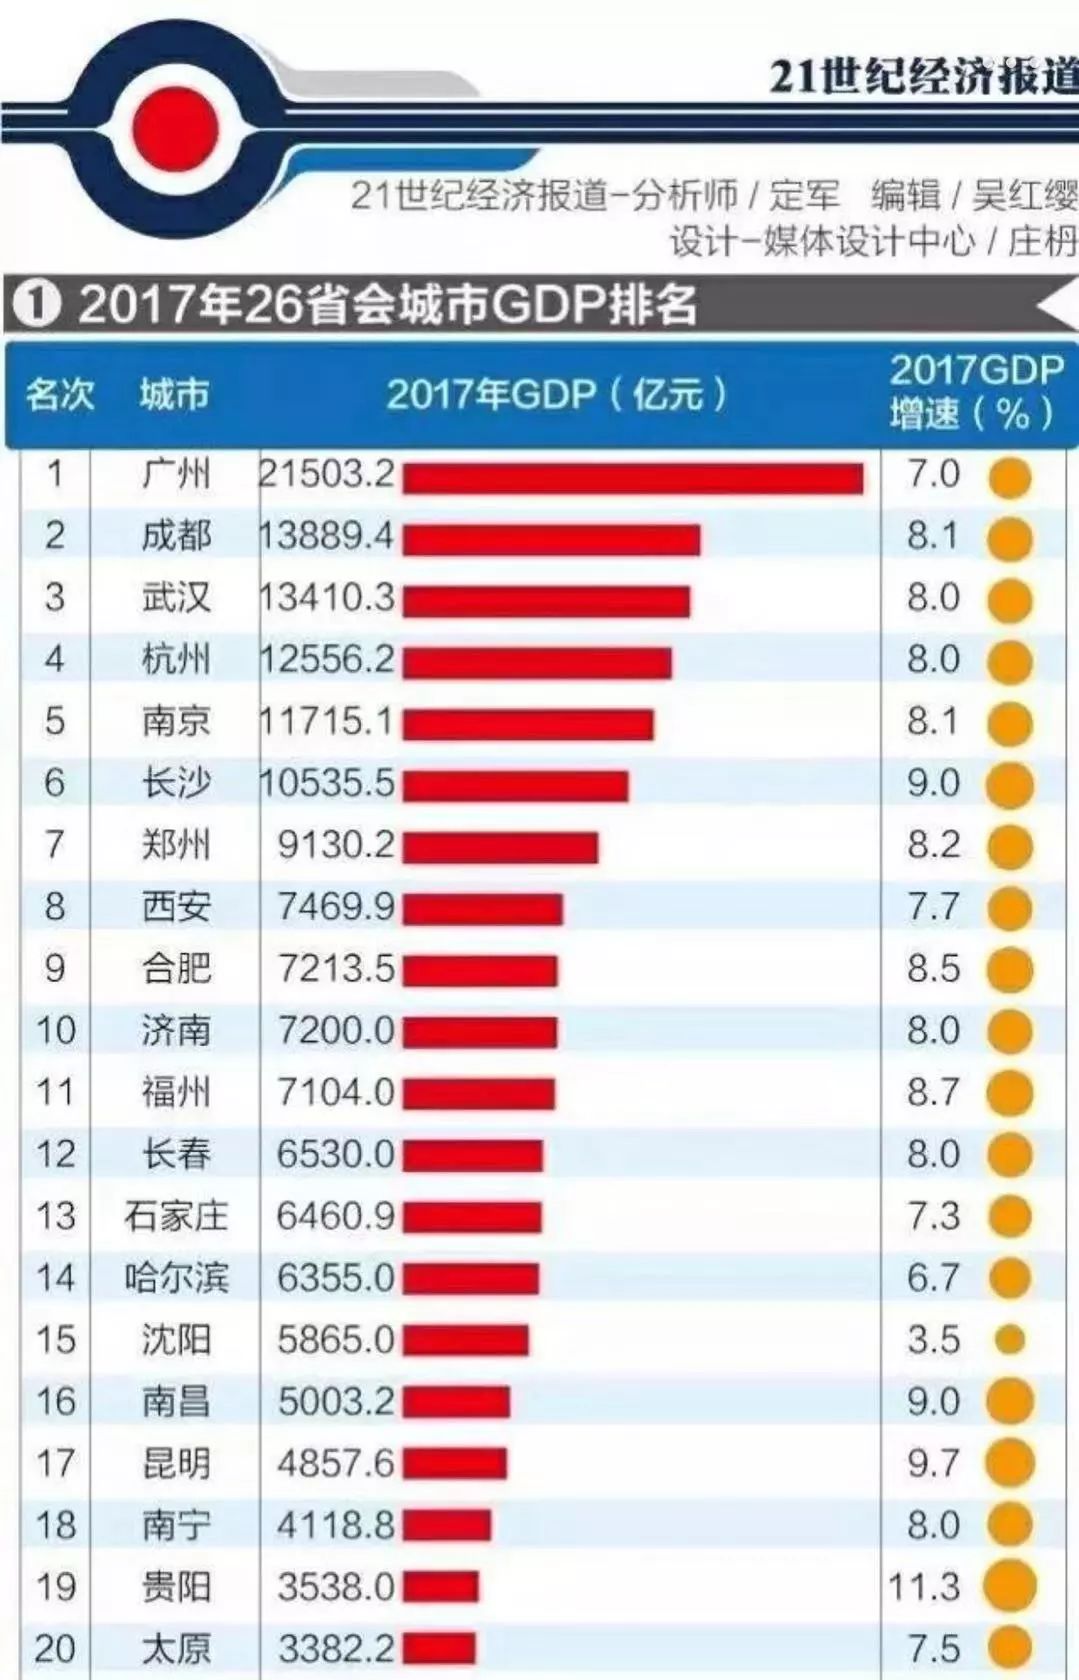 長安鎮gdp多少億_2017年西安各區縣GDP總量排行榜 高新區突破1200億排名第二 附榜單